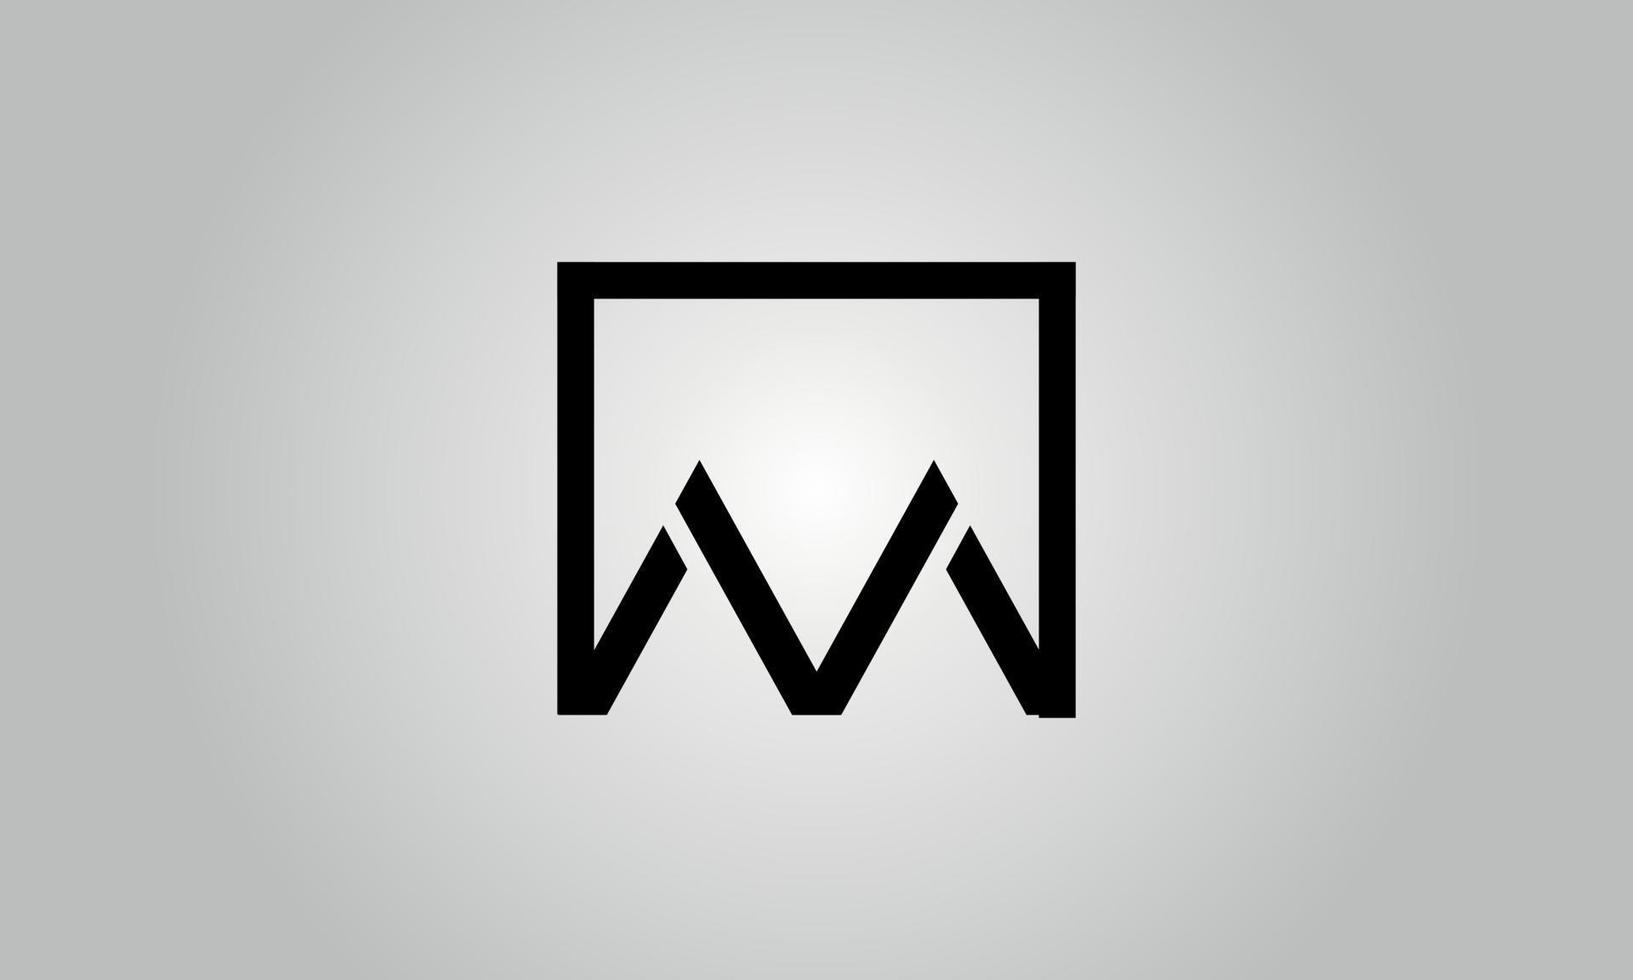 Buchstabe aa-Logo-Design. aa-Logo mit quadratischer Form in schwarzen Farben Vektor kostenlose Vektorvorlage.